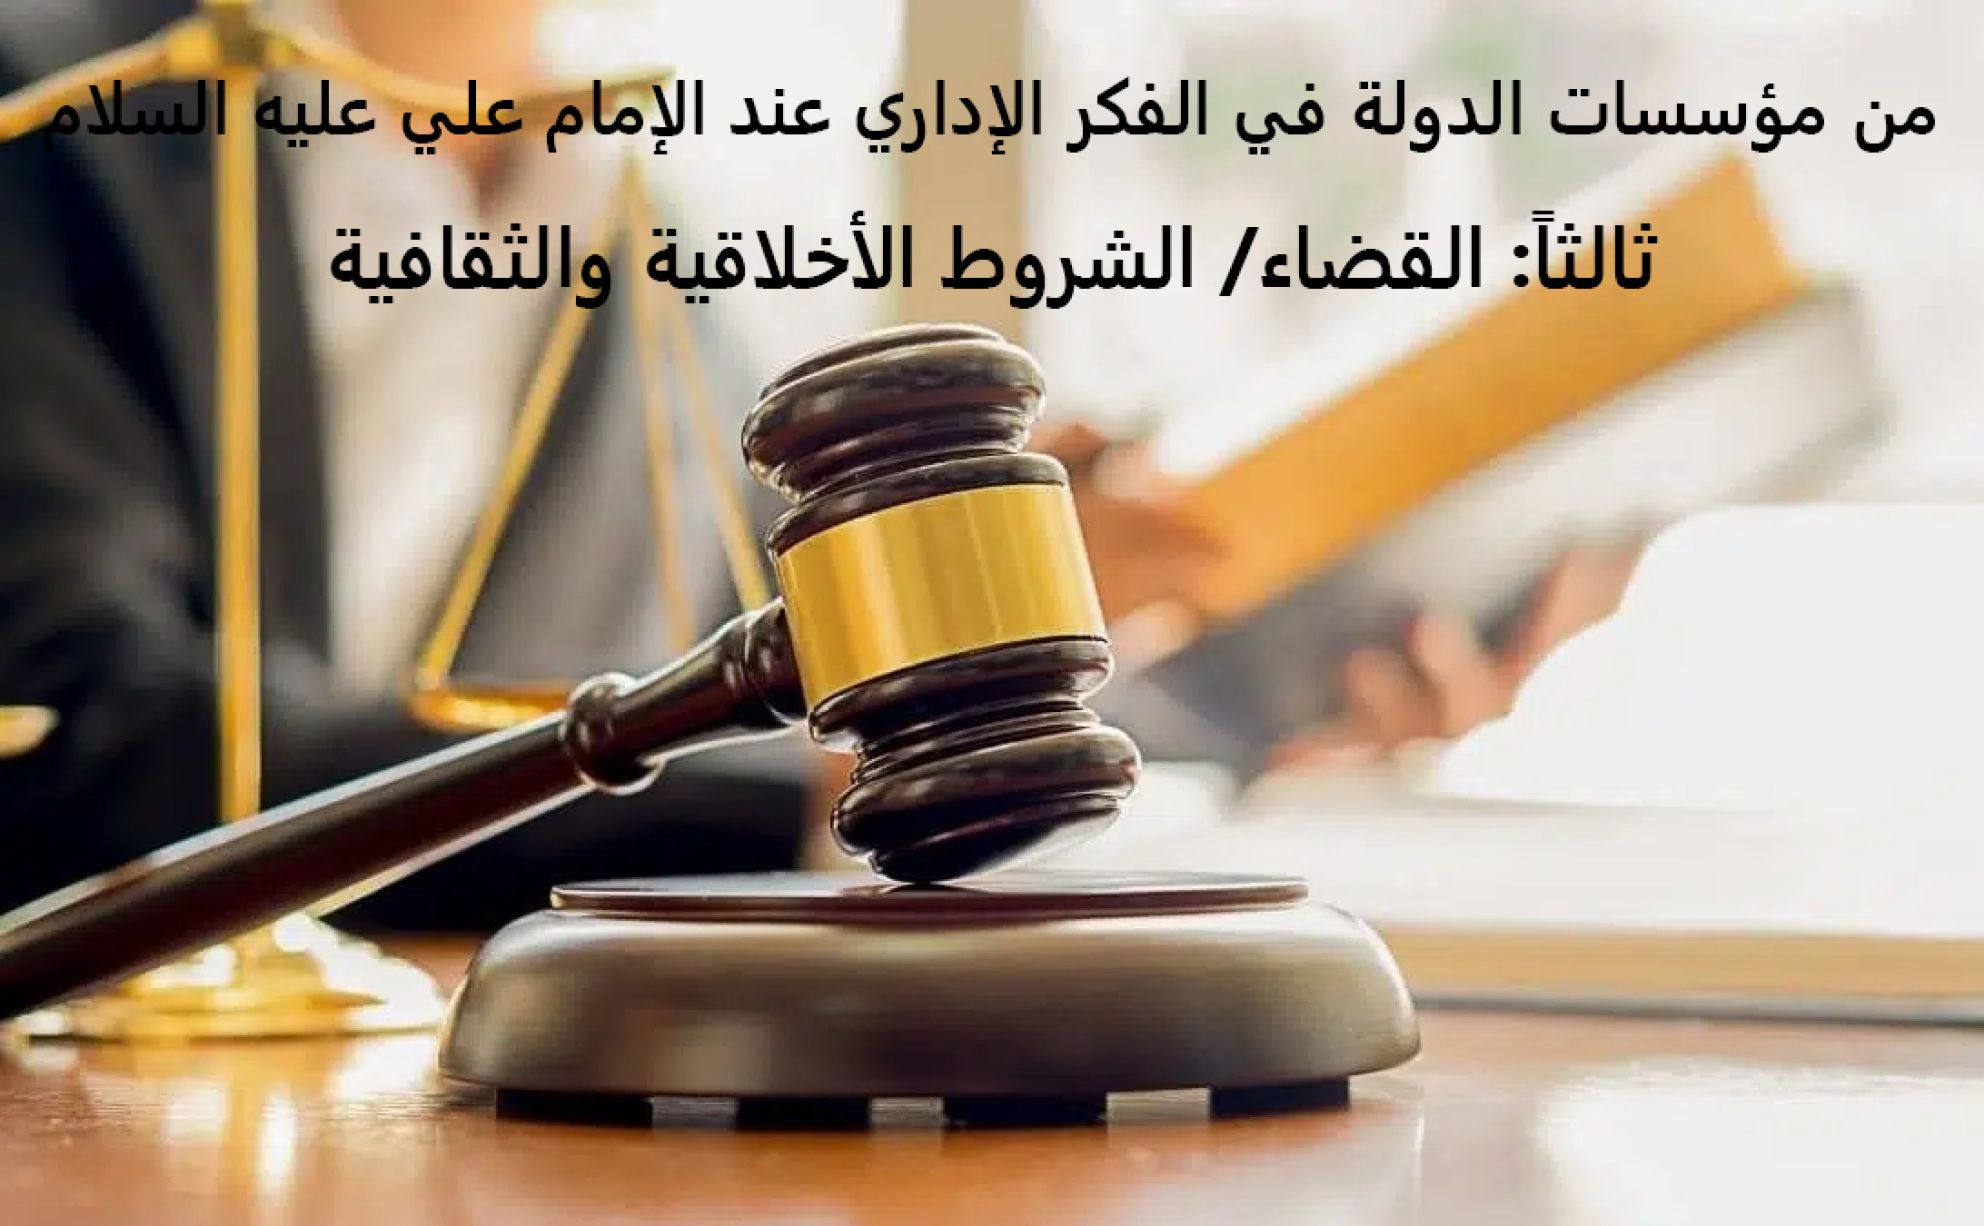 من مؤسسات الدولة في الفكر الإداري عند الإمام علي عليه السلام ثالثاً: القضاء/ الشروط الأخلاقية والثقافية